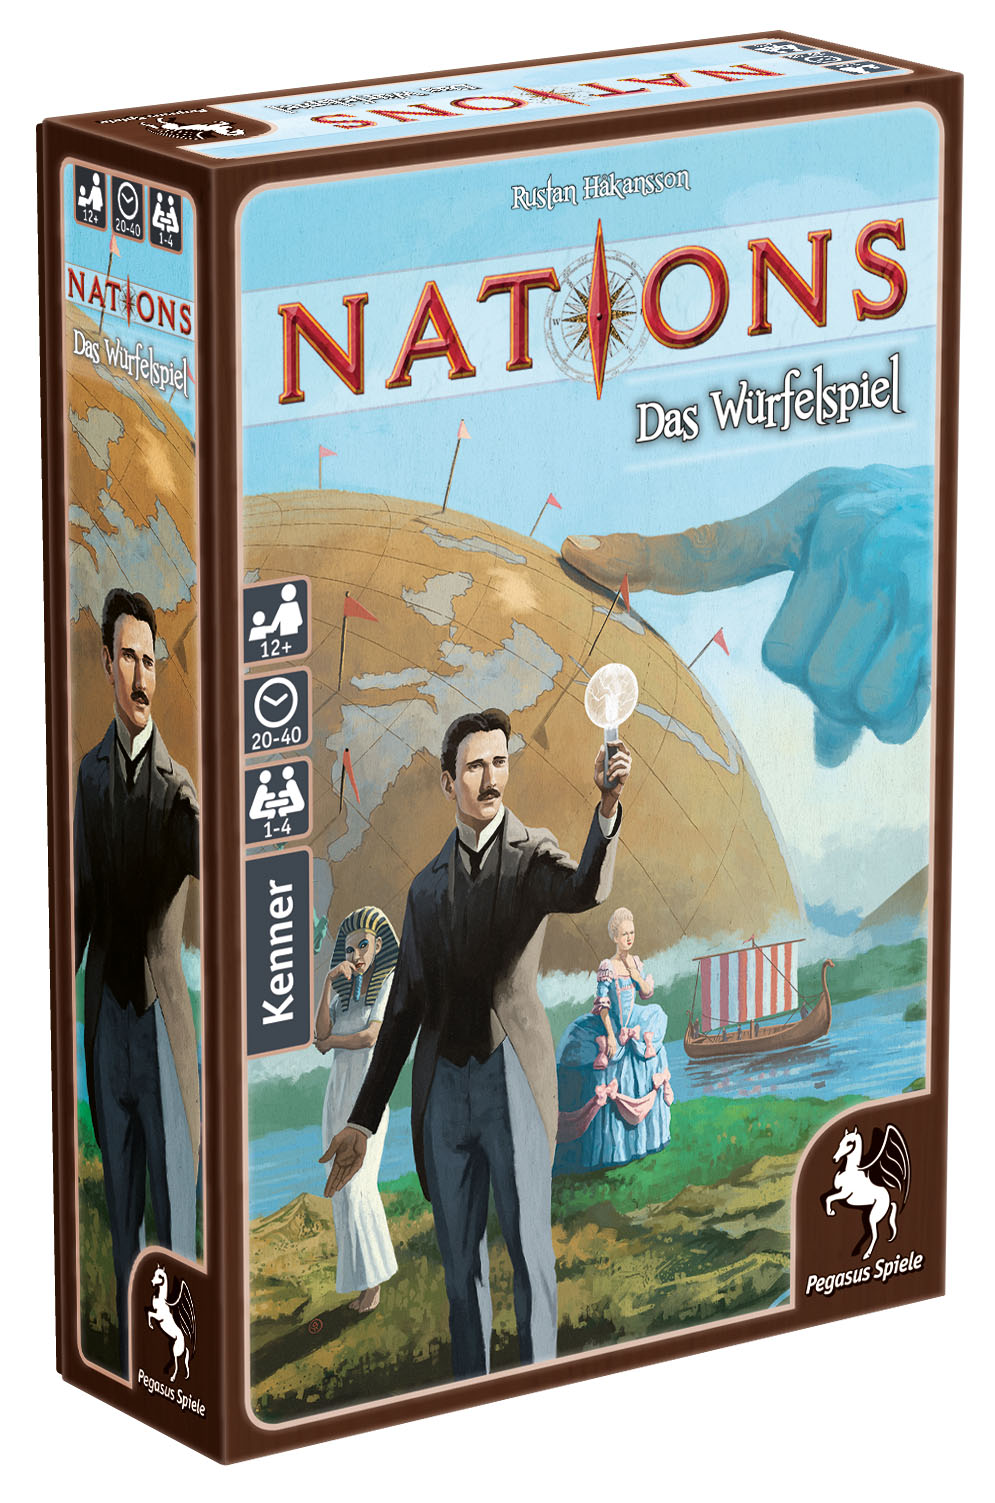 Nations - Das Würfelspiel erscheint zur Spiel ´17 bei Pegasus